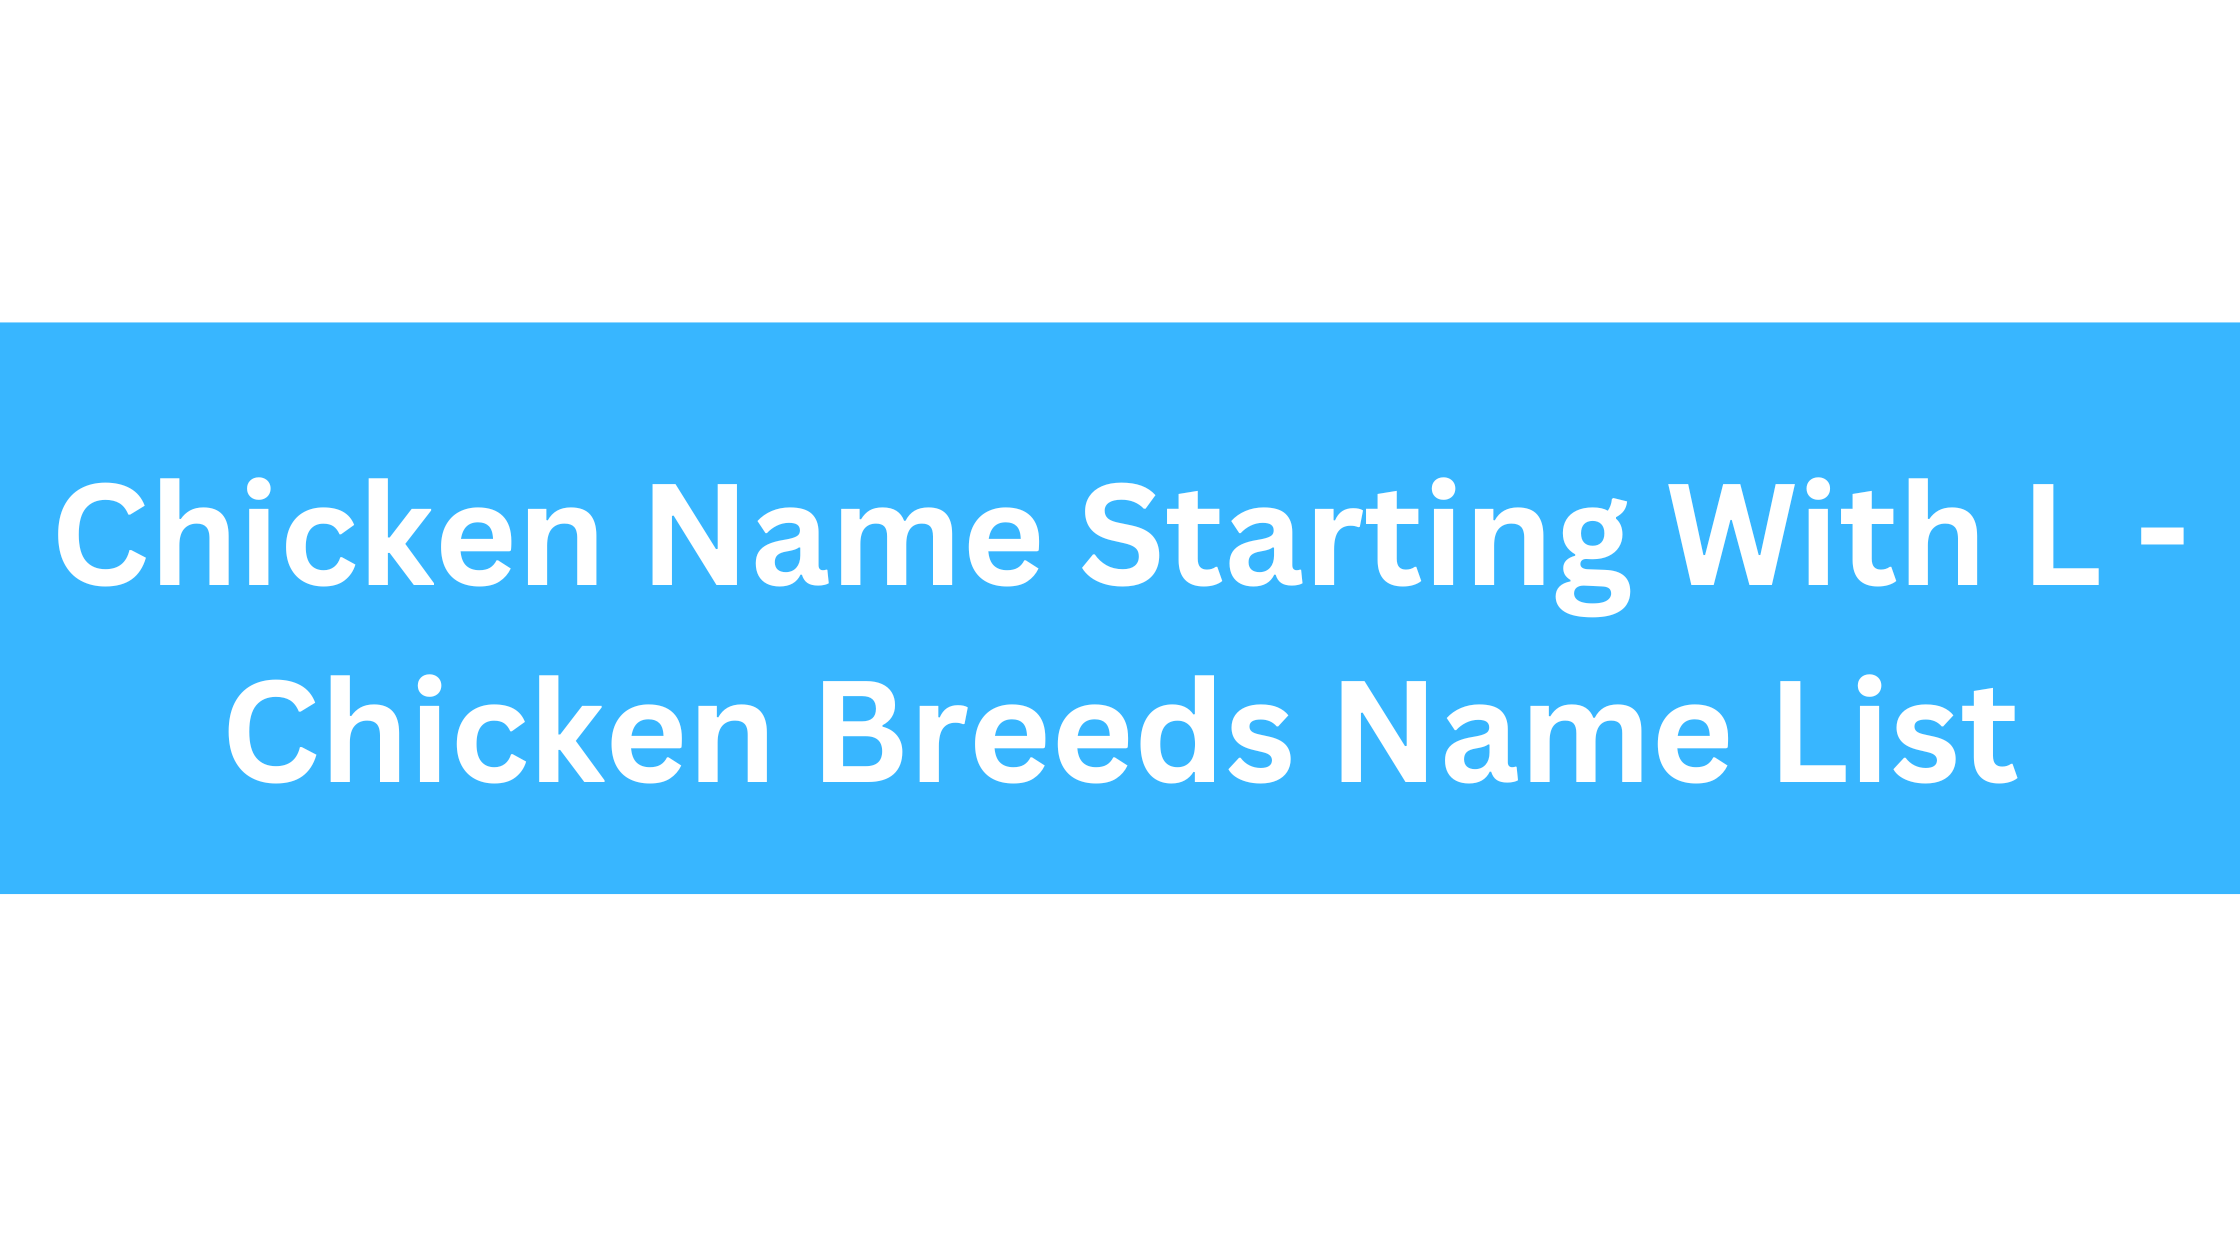 Chicken Breeds That Start With L